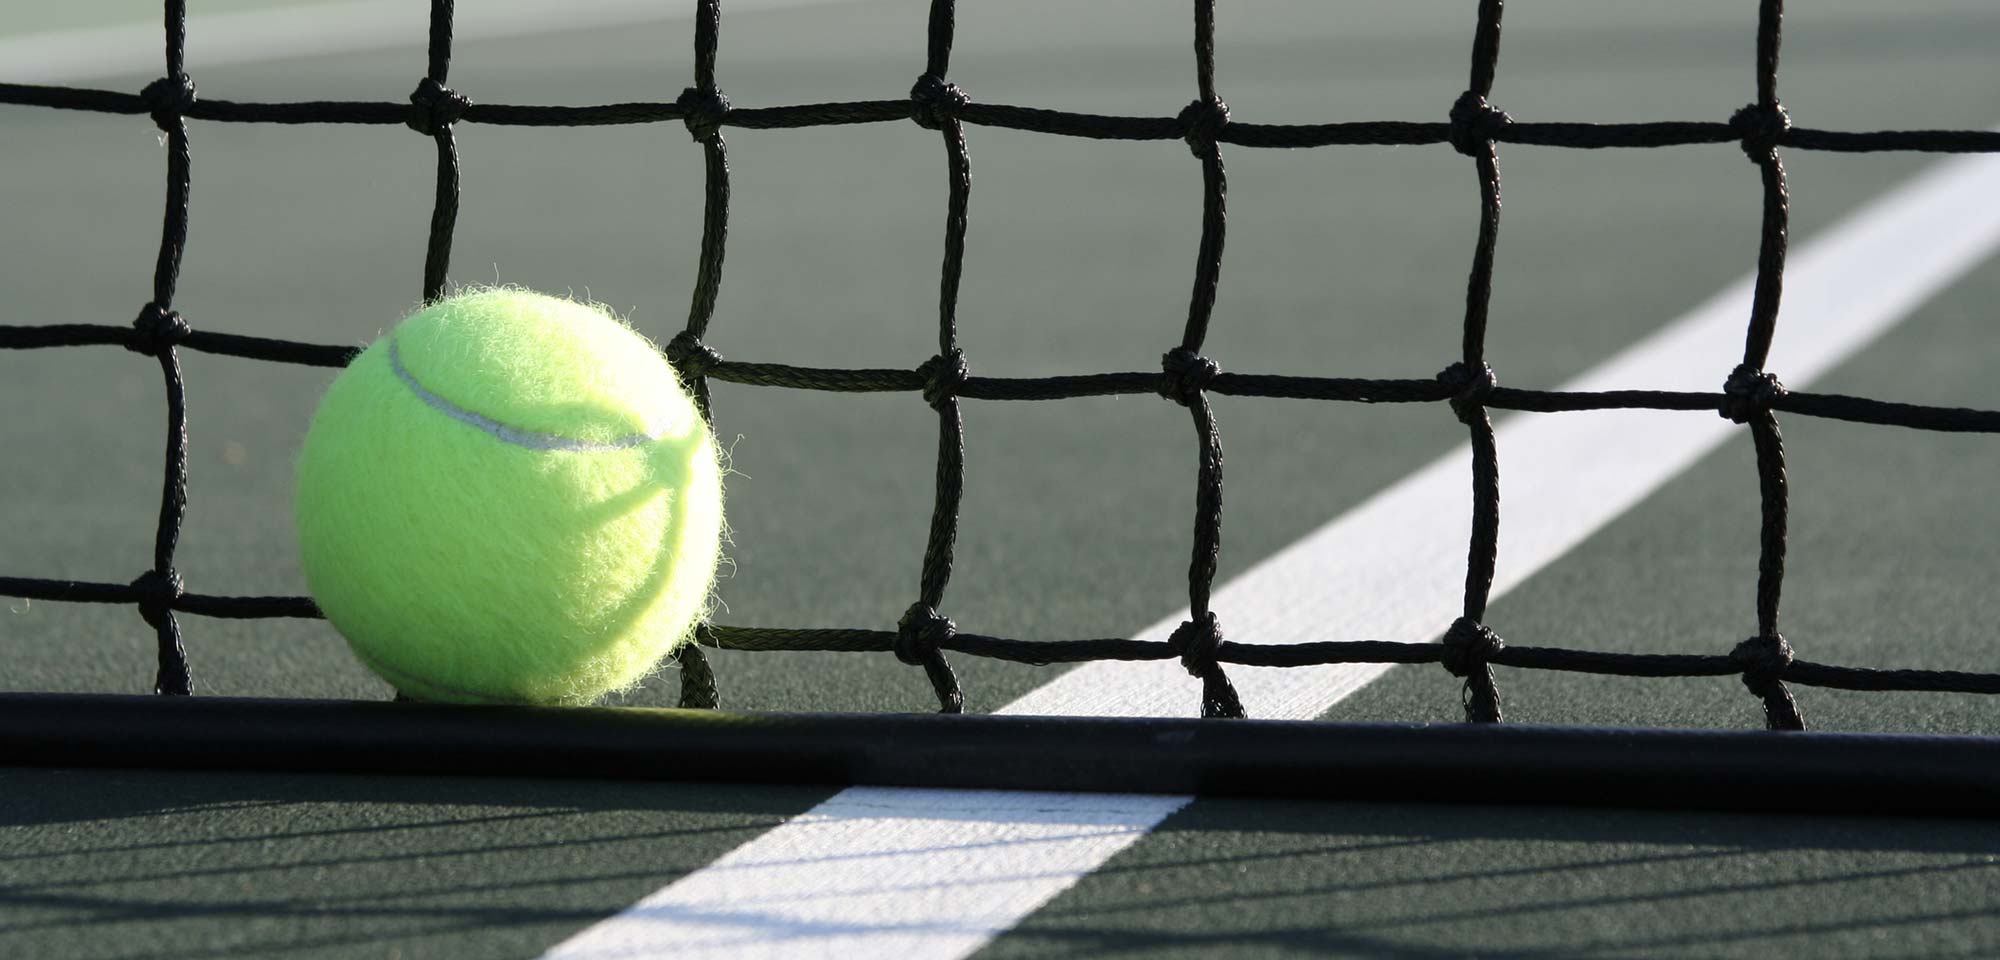 background-slider-tennis